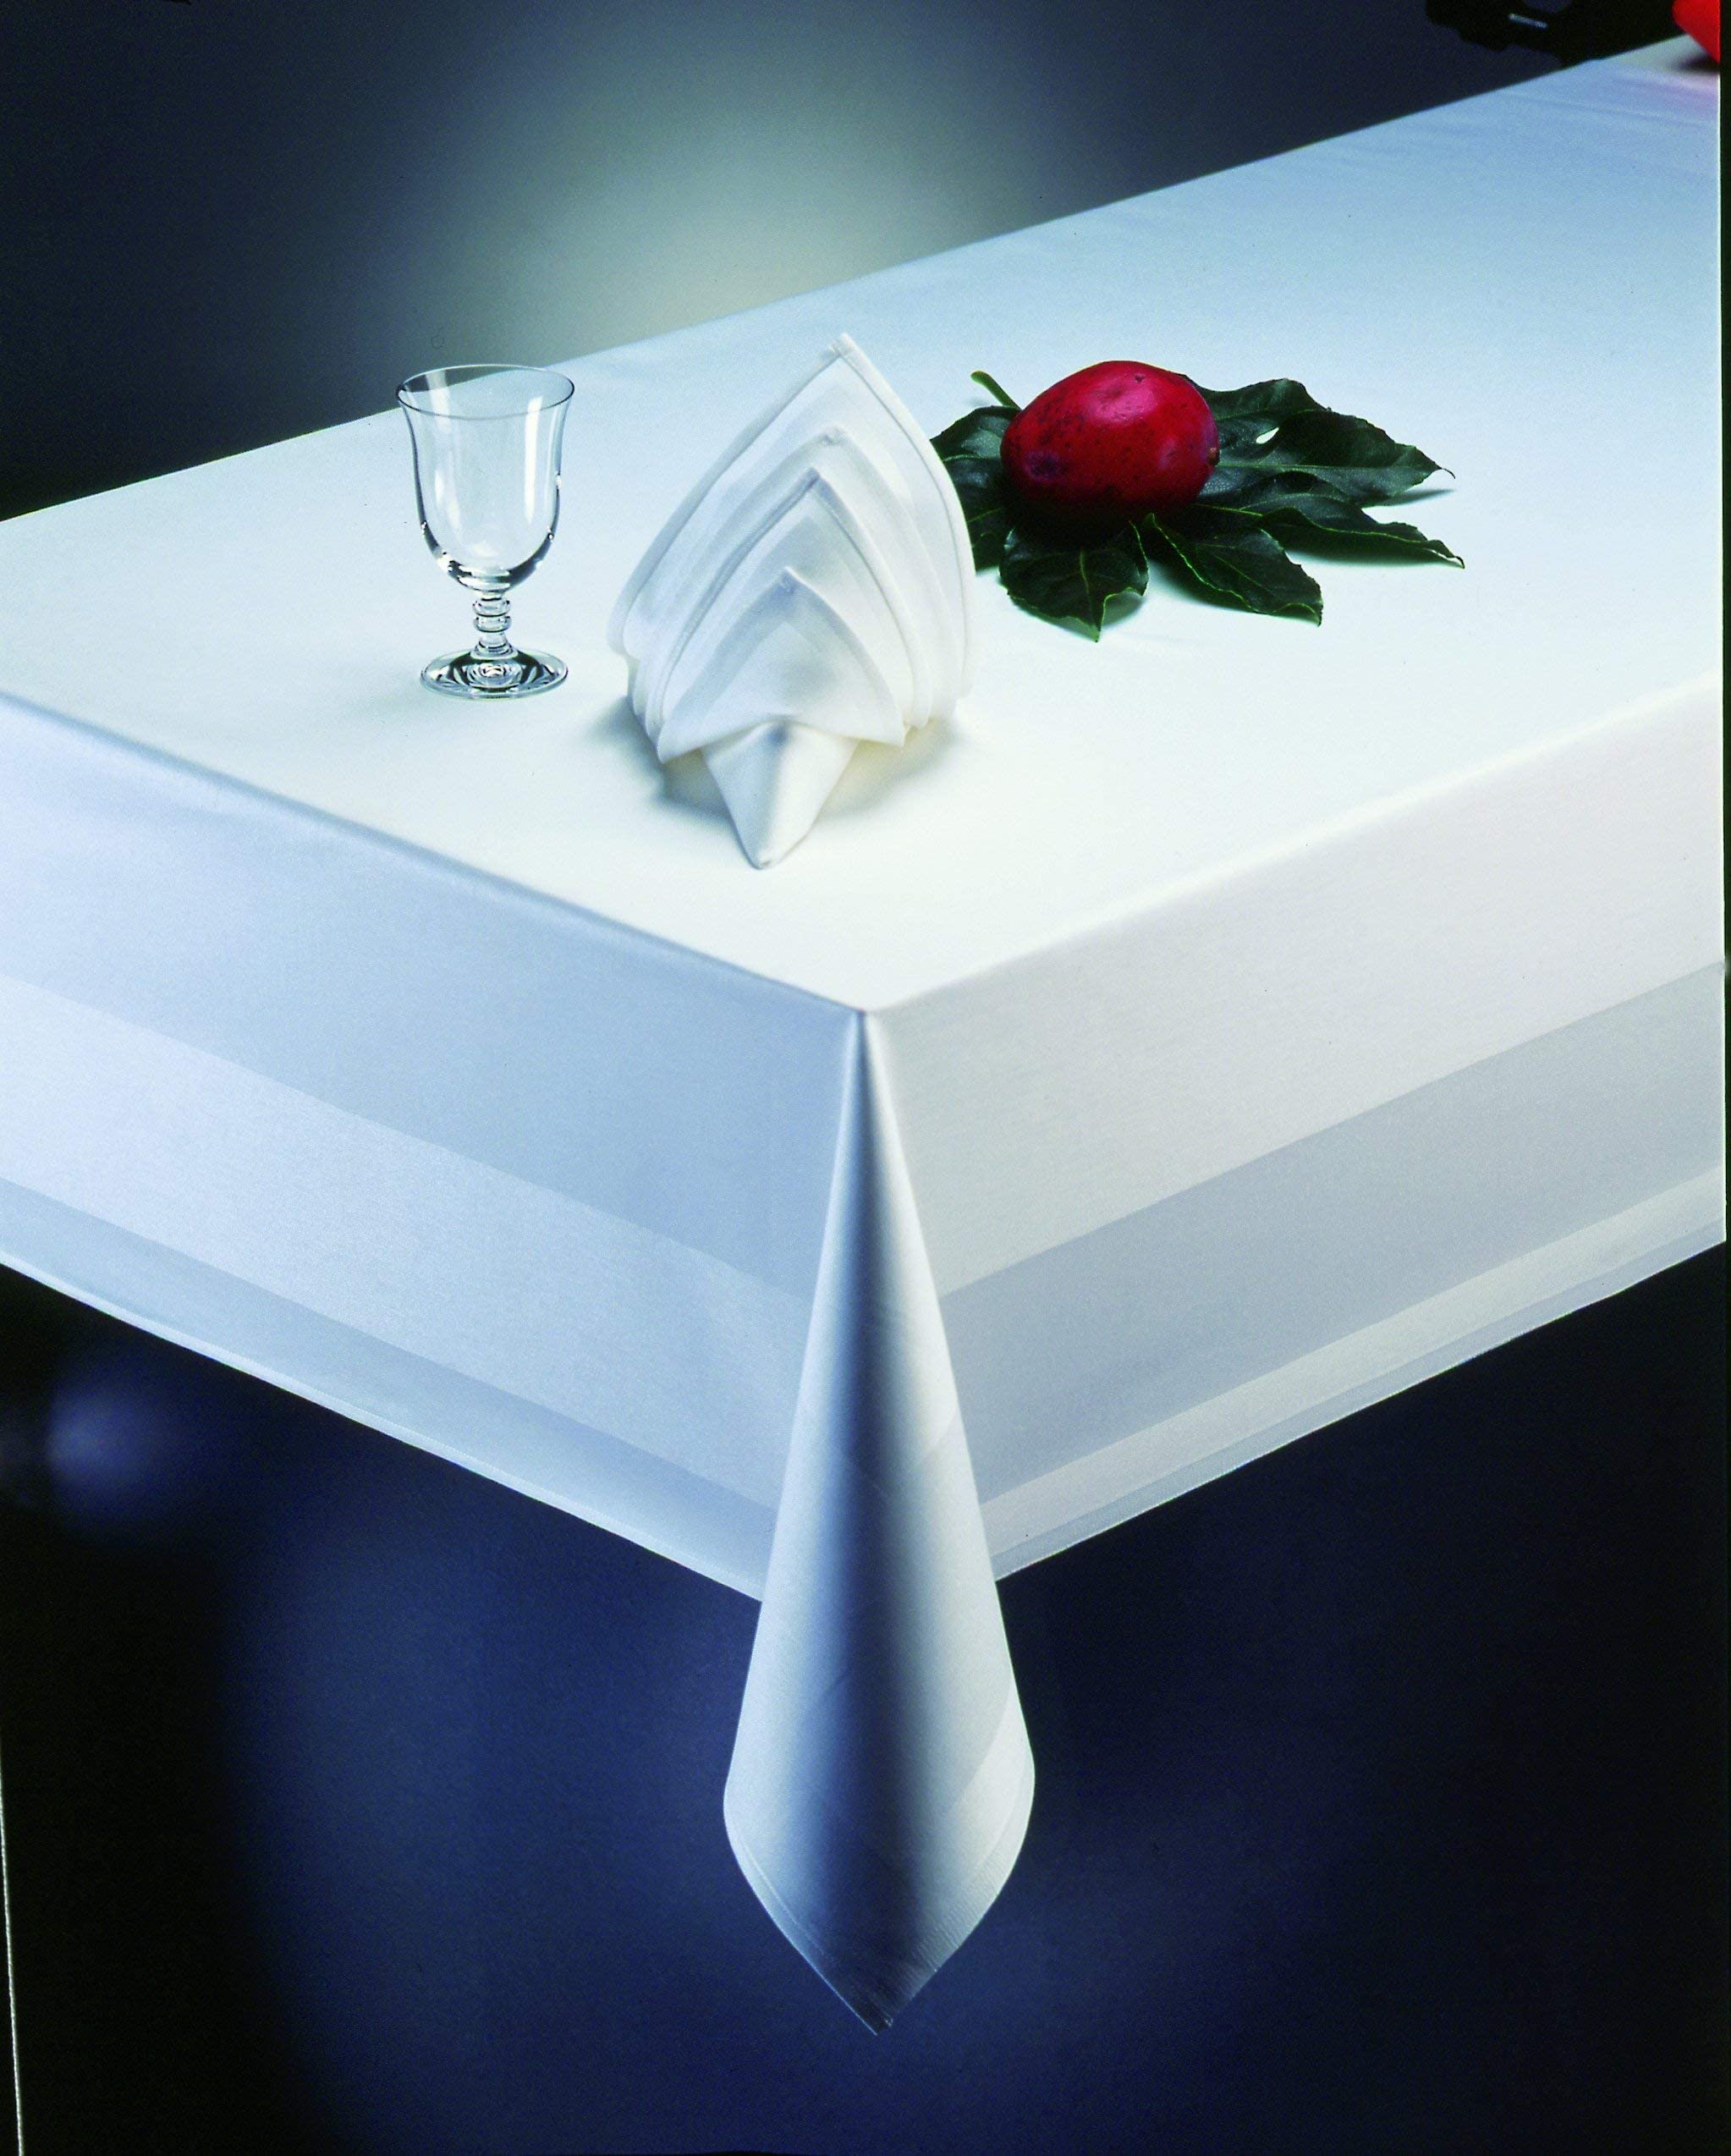 Gastro Uzal Tischdecken, Damast Tischdecke mit Atlaskante weiß - 130 x 280 cm - bei 95°C waschbar, Gastro Tischdecke weiße Tischtücher